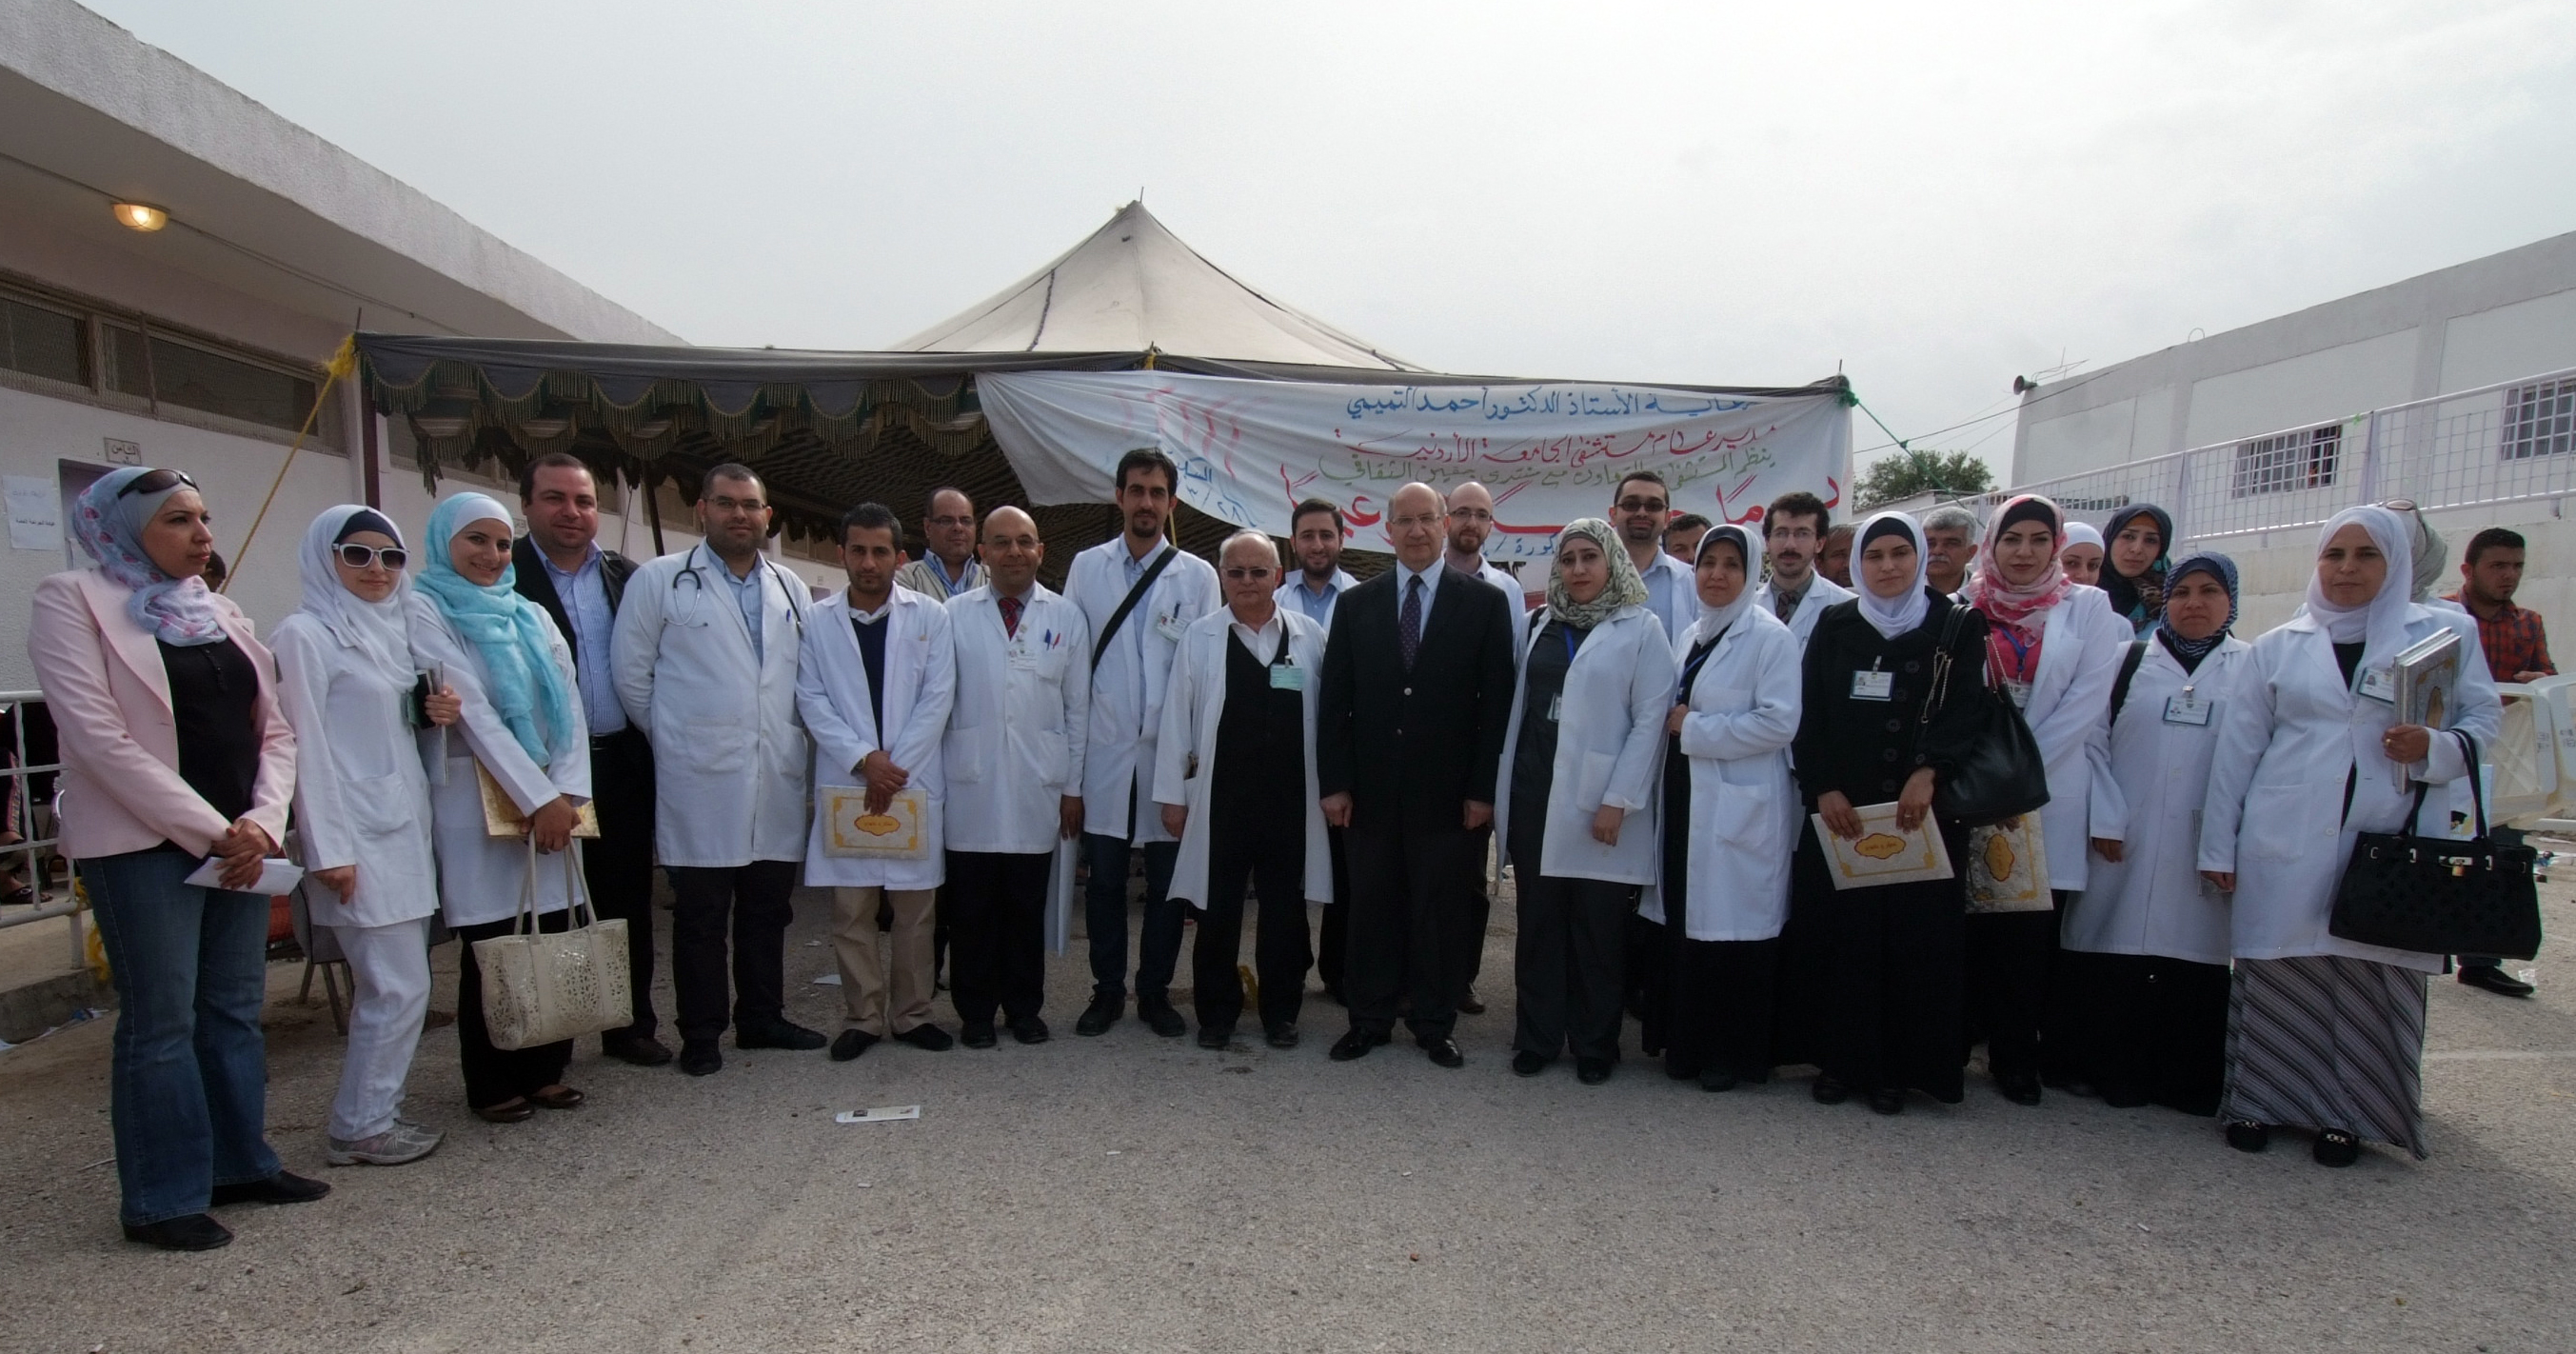 ضمن سلسلة النشاطات الدورية الموجهة لخدمة المجتمع المحلي على امتداد خارطة الوطن مُستشفى الجامعة الأردنية يعالج (400) مريضاً في يو